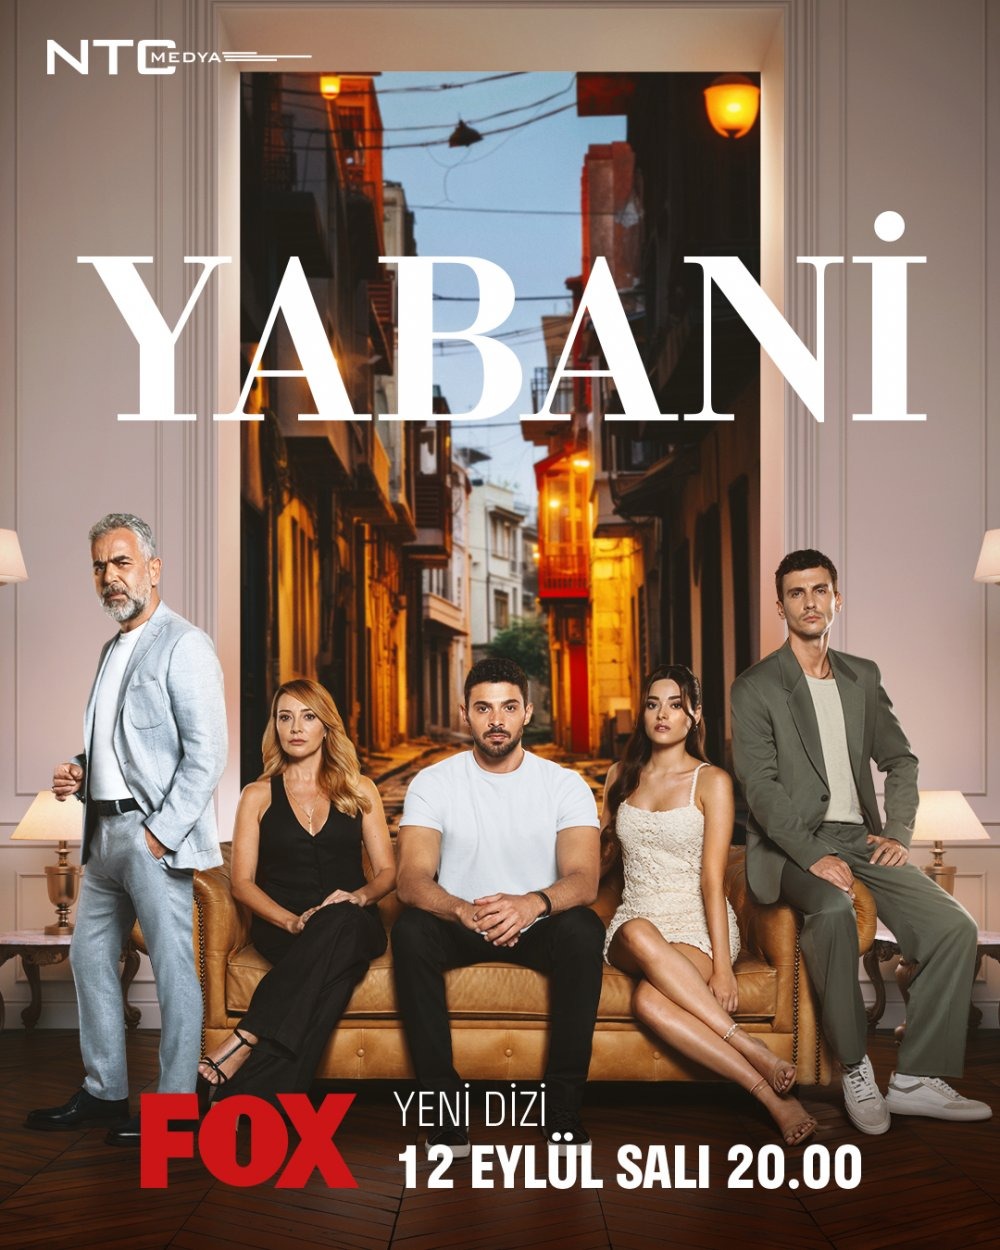 Extra Large TV Poster Image for Yabani 